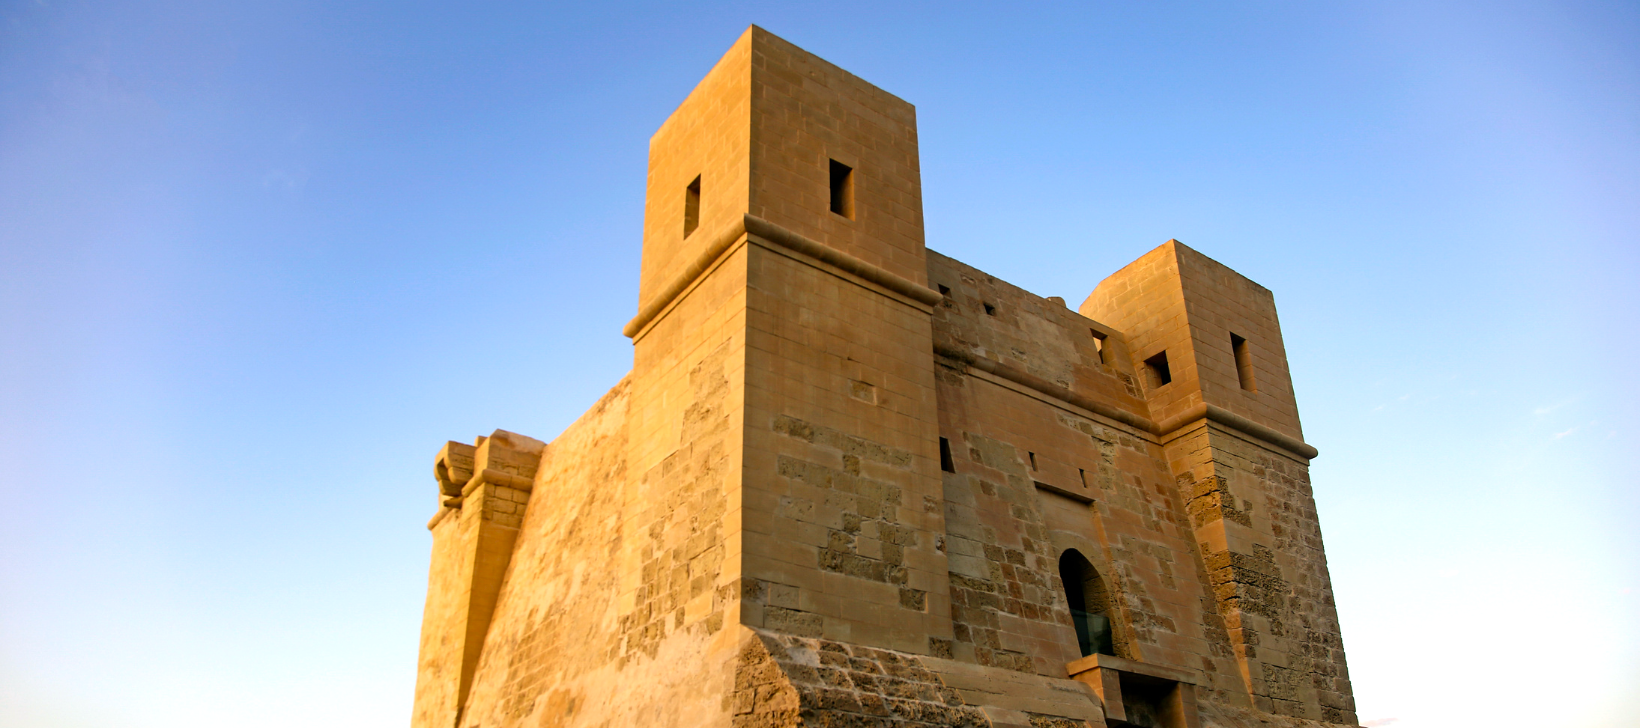 Qawra watchtower